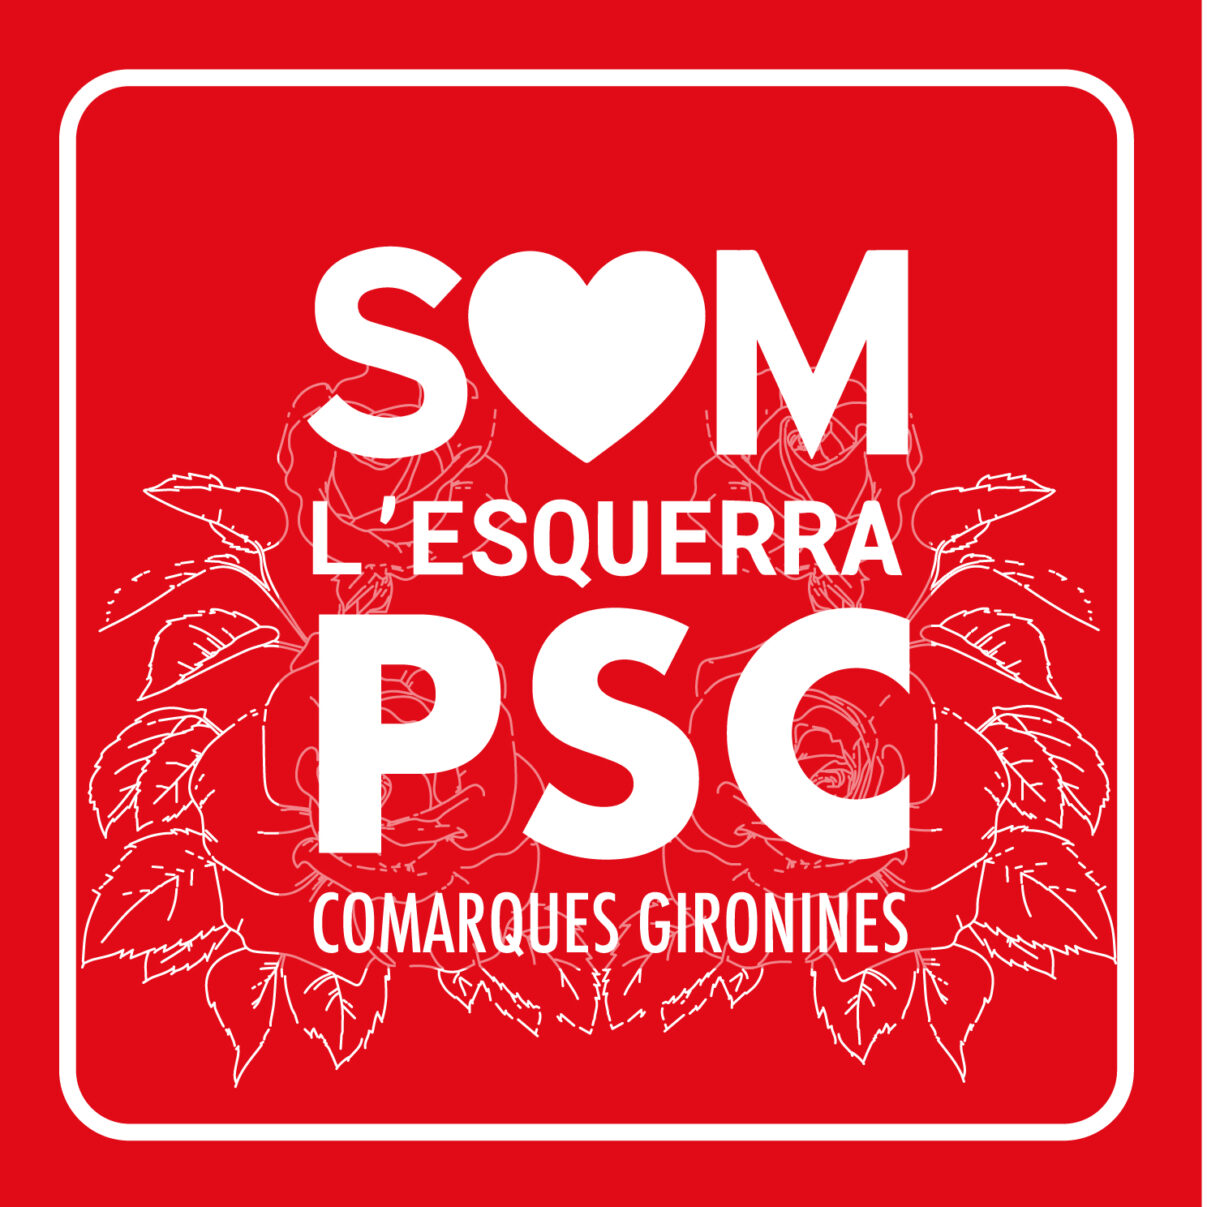 Comunicat del PSC sobre la pregunta de la secretaria de l’Ajuntament de Lloret de Mar